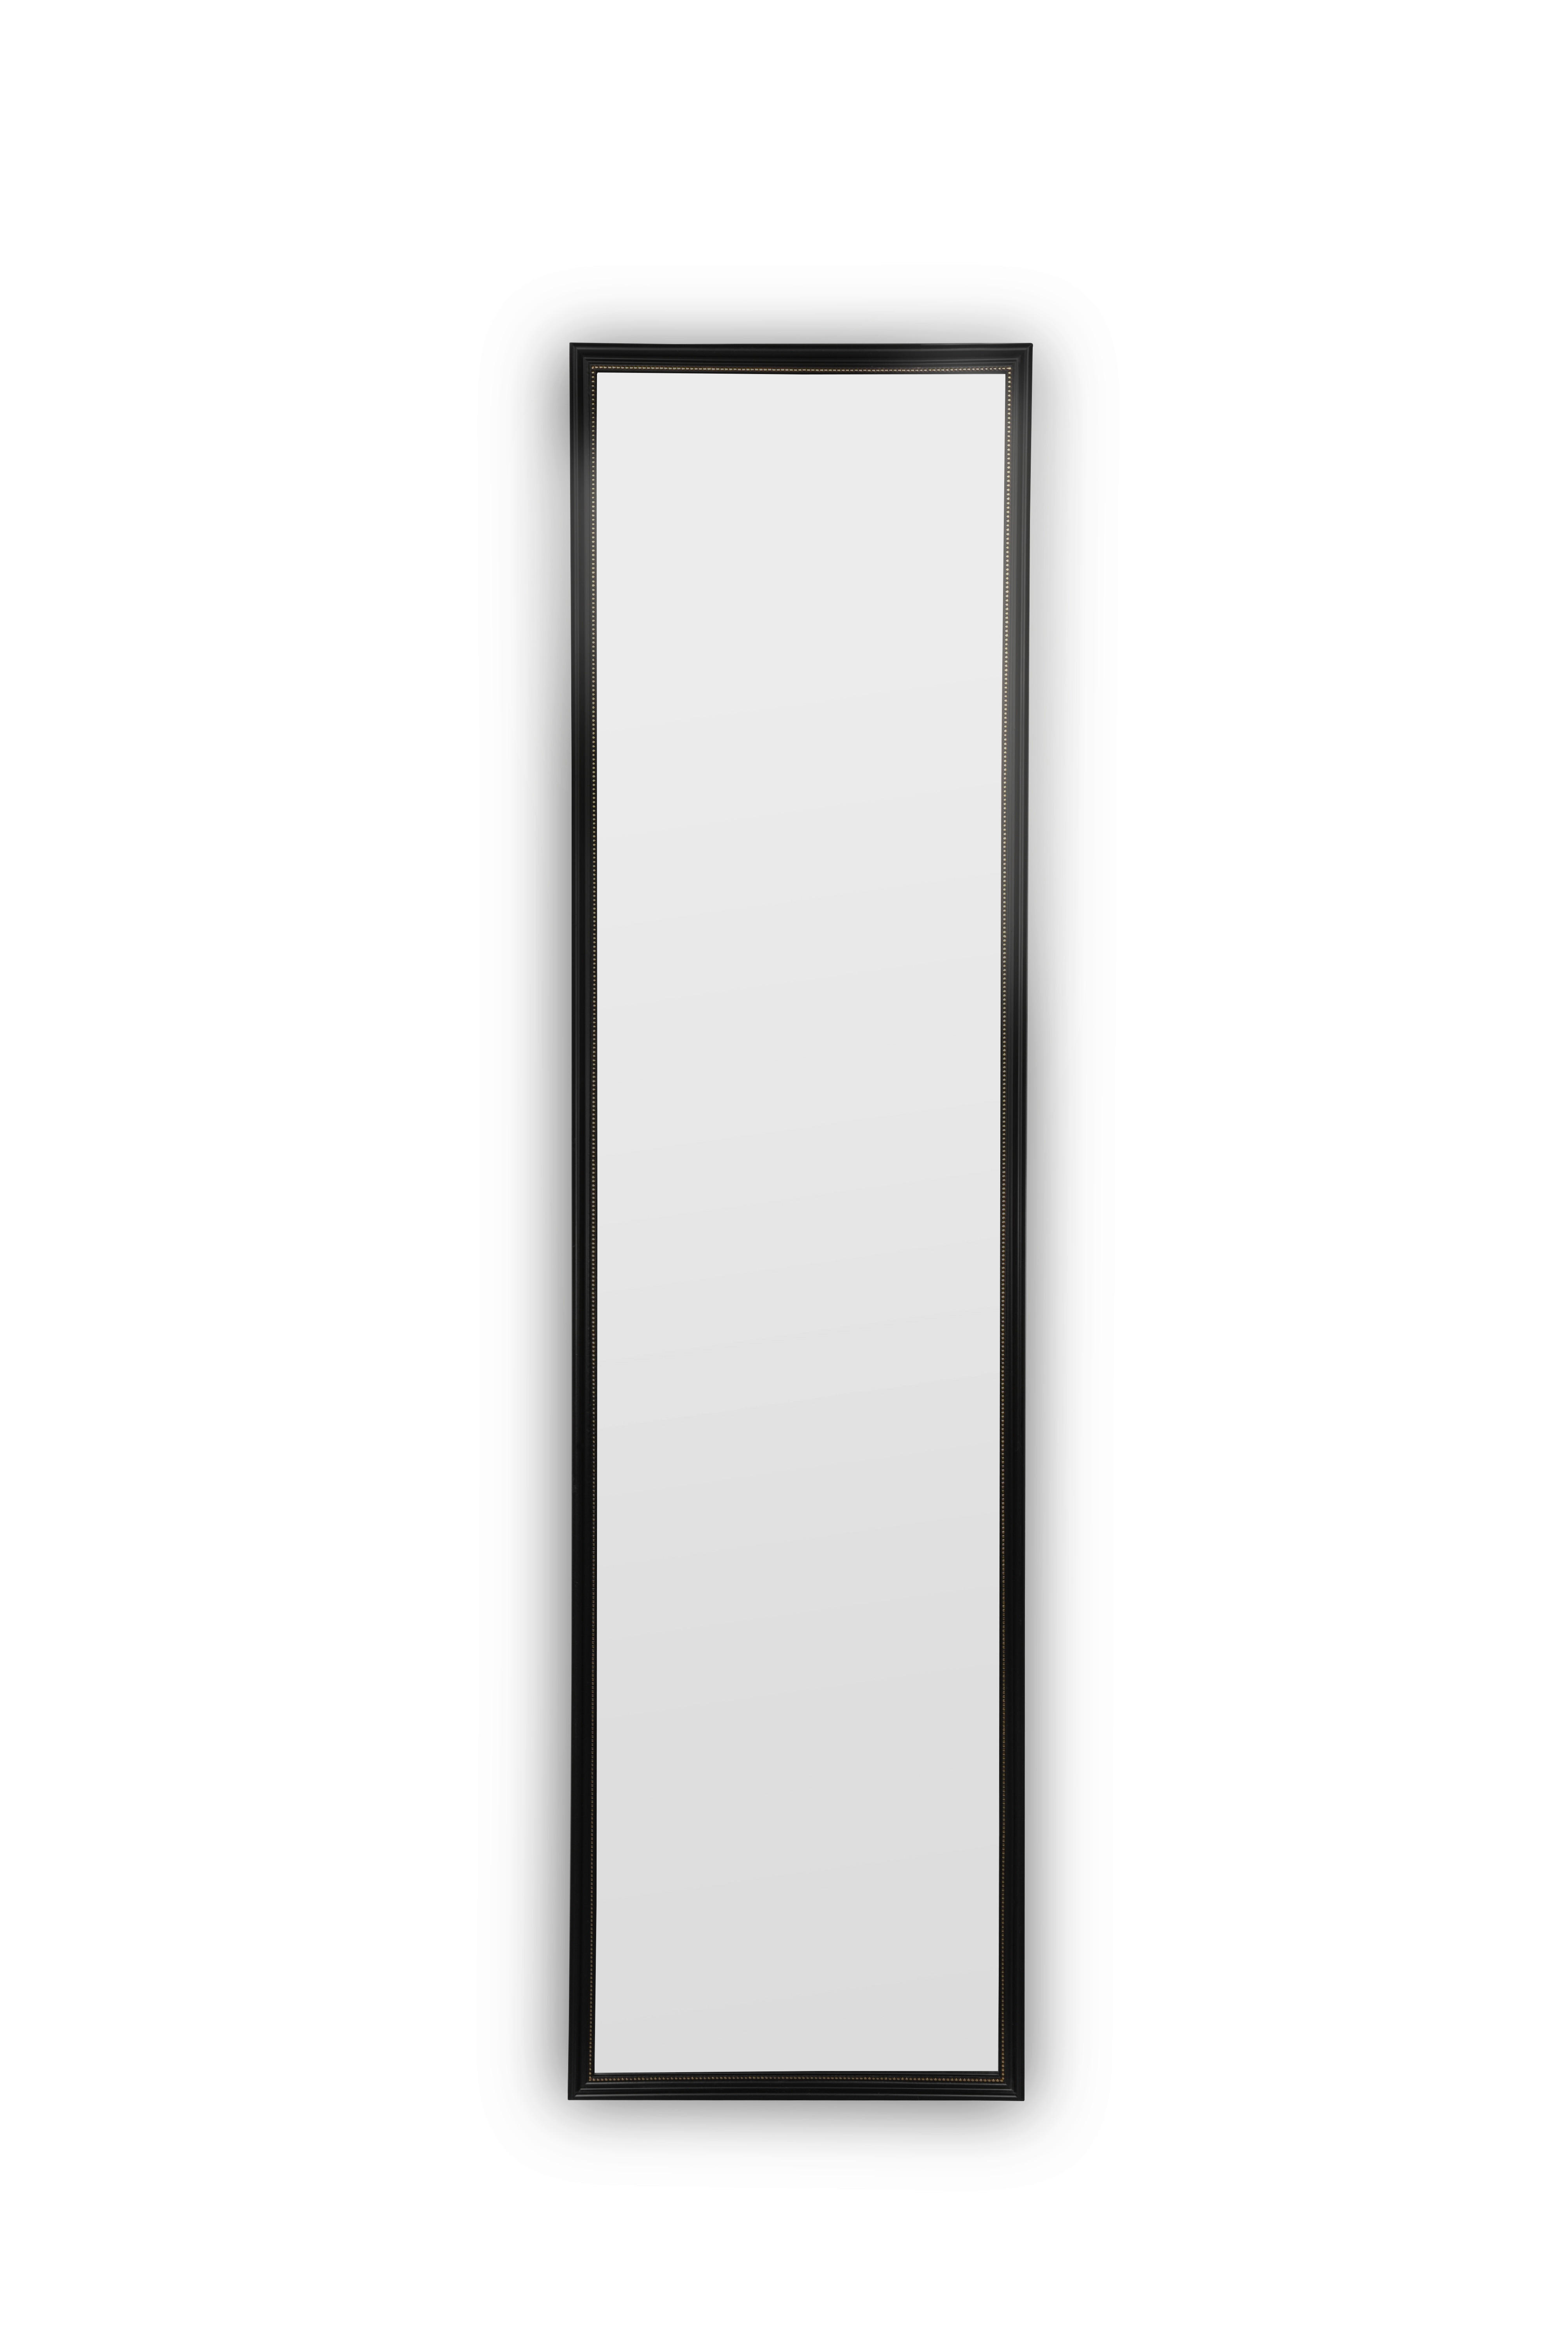 WANDSPIEGEL Schwarz, Goldfarben  - Goldfarben/Schwarz, KONVENTIONELL, Glas/Kunststoff (33/125/1,5cm)